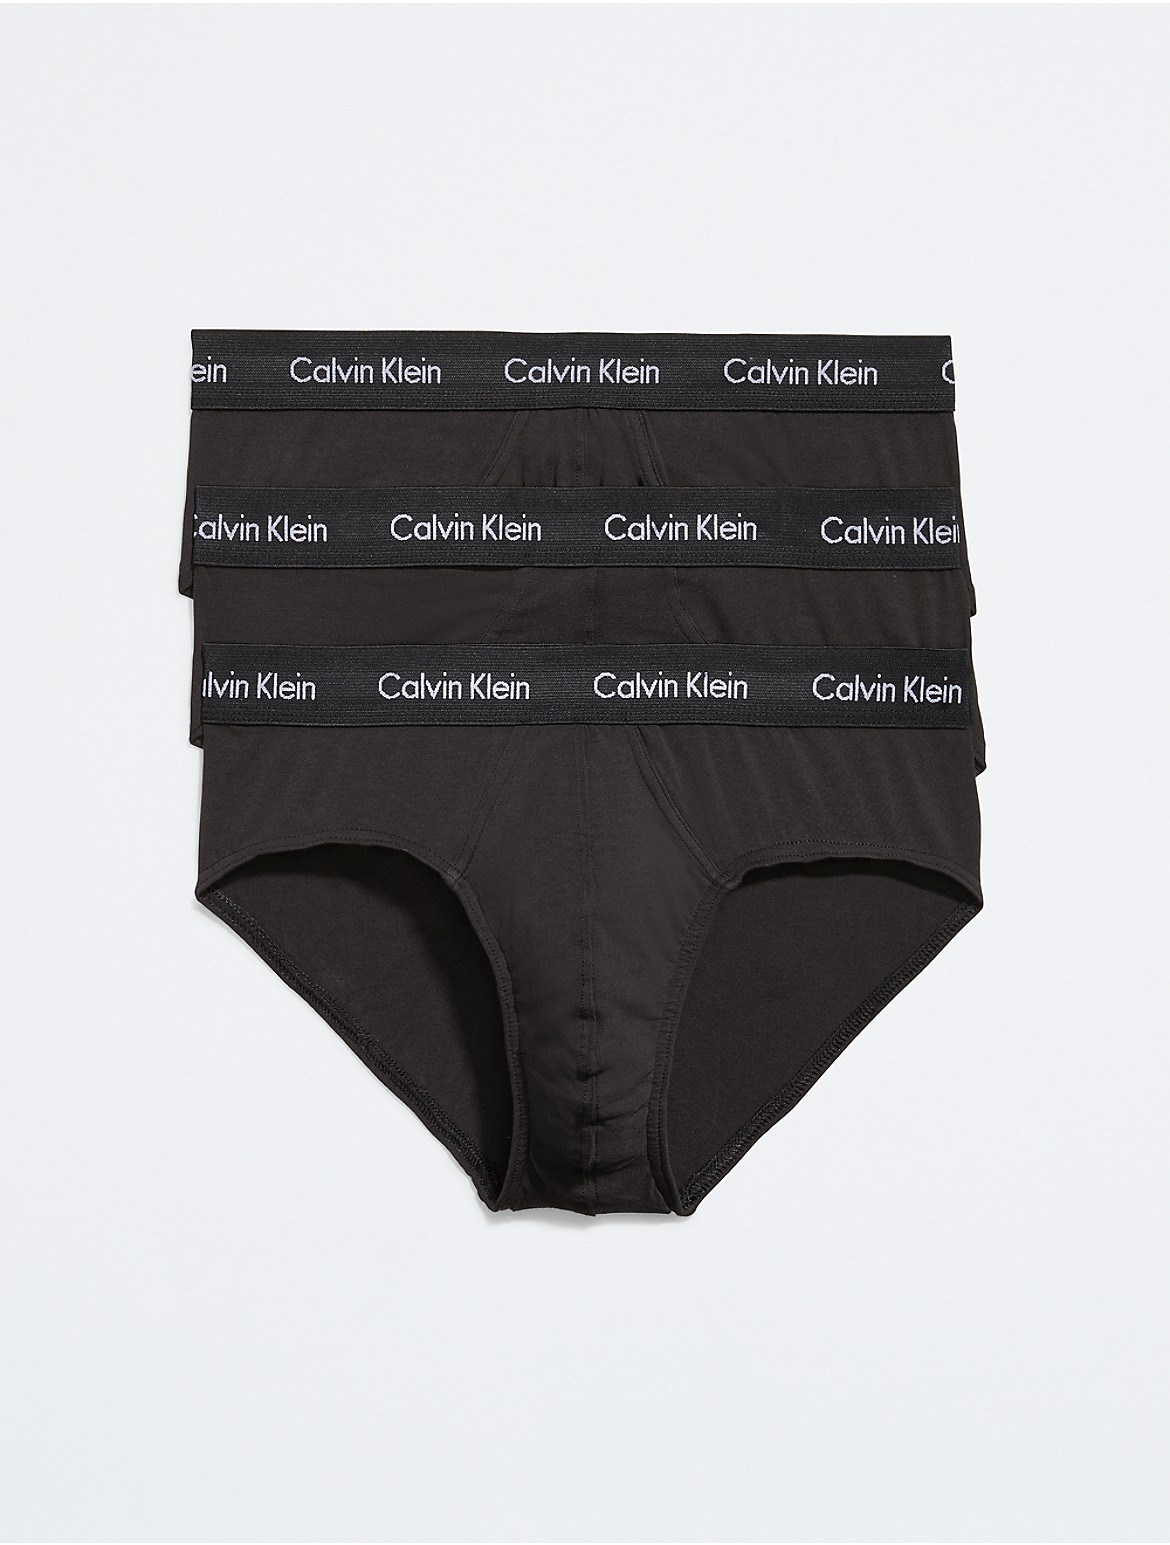 Calvin Klein Men's Cotton Stretch 3-Pack Hip Brief - Black - S